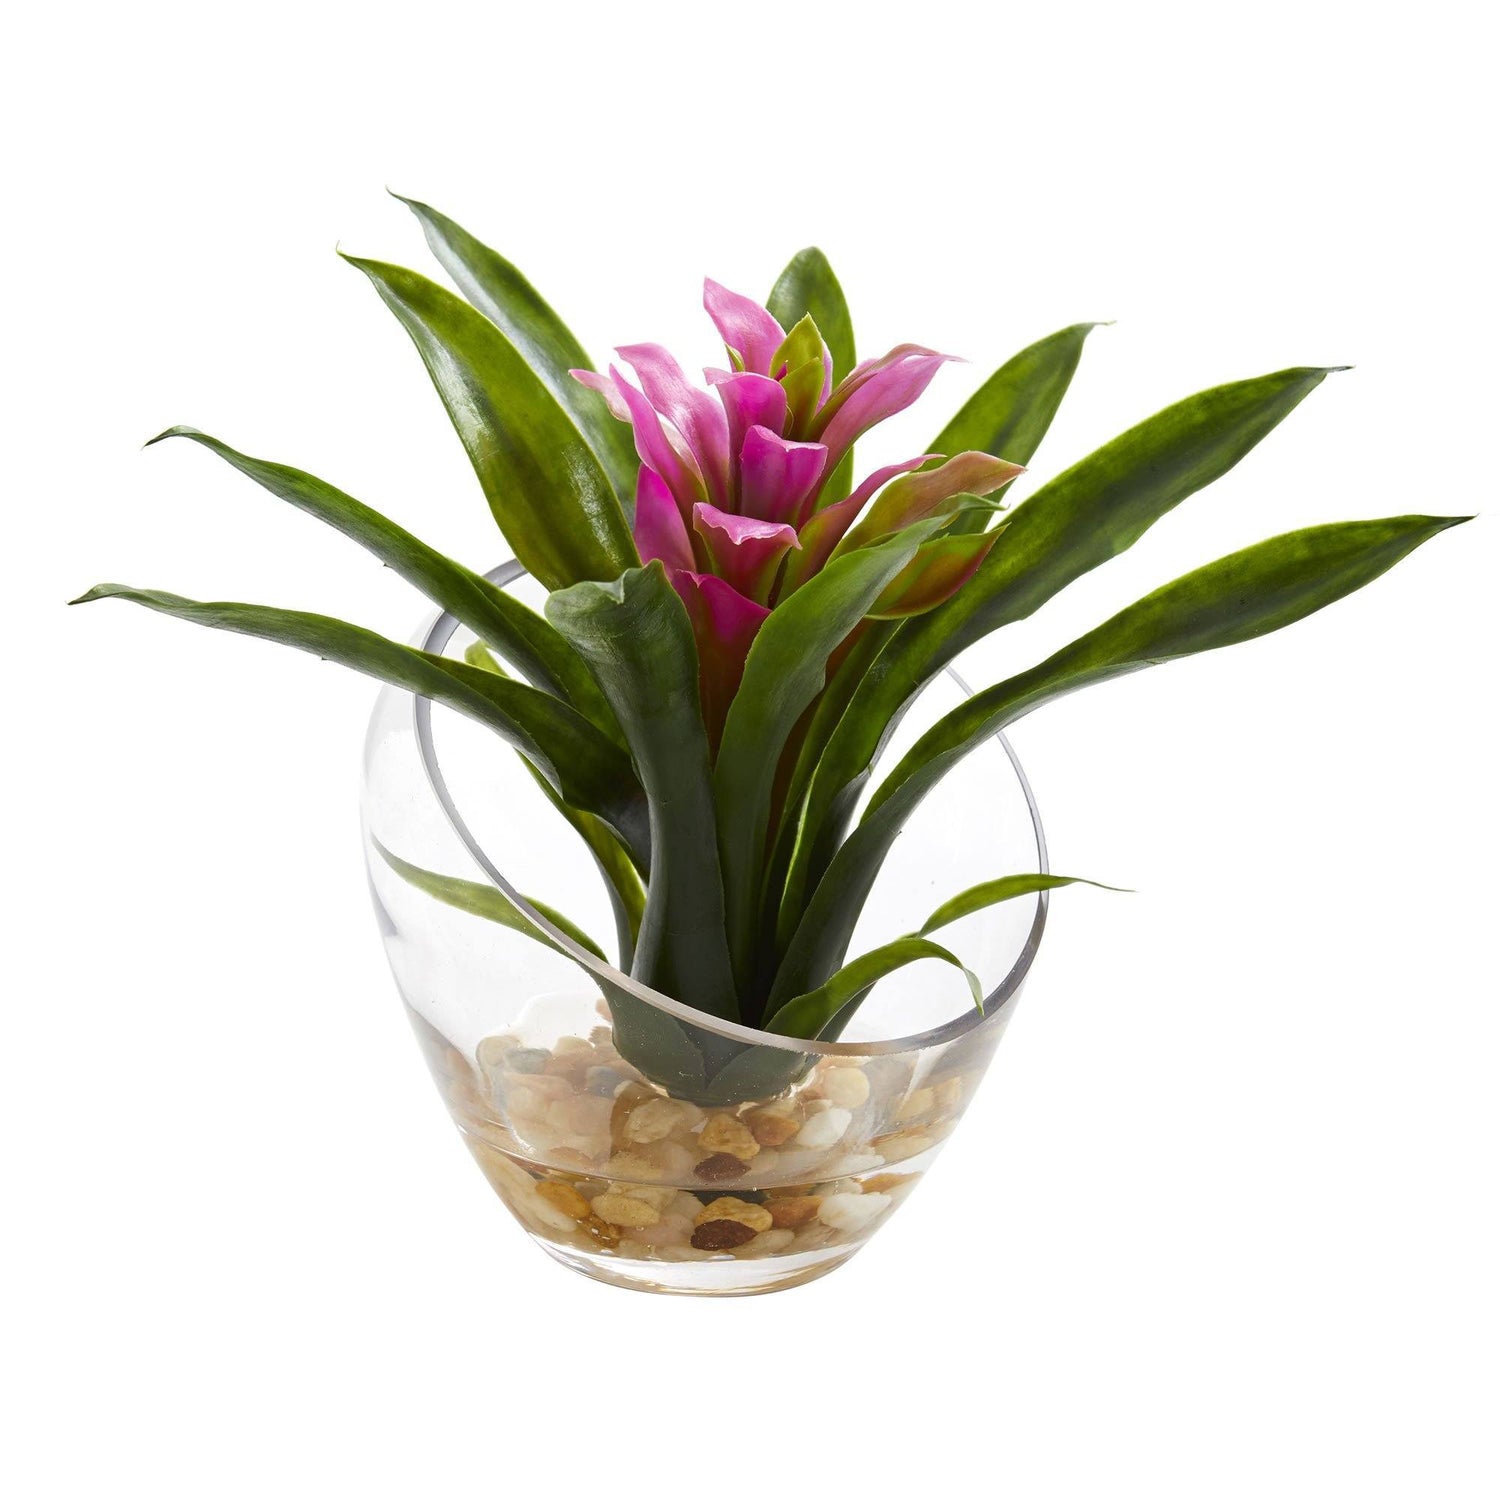 8“热带凤梨科植物的花瓶人工安排